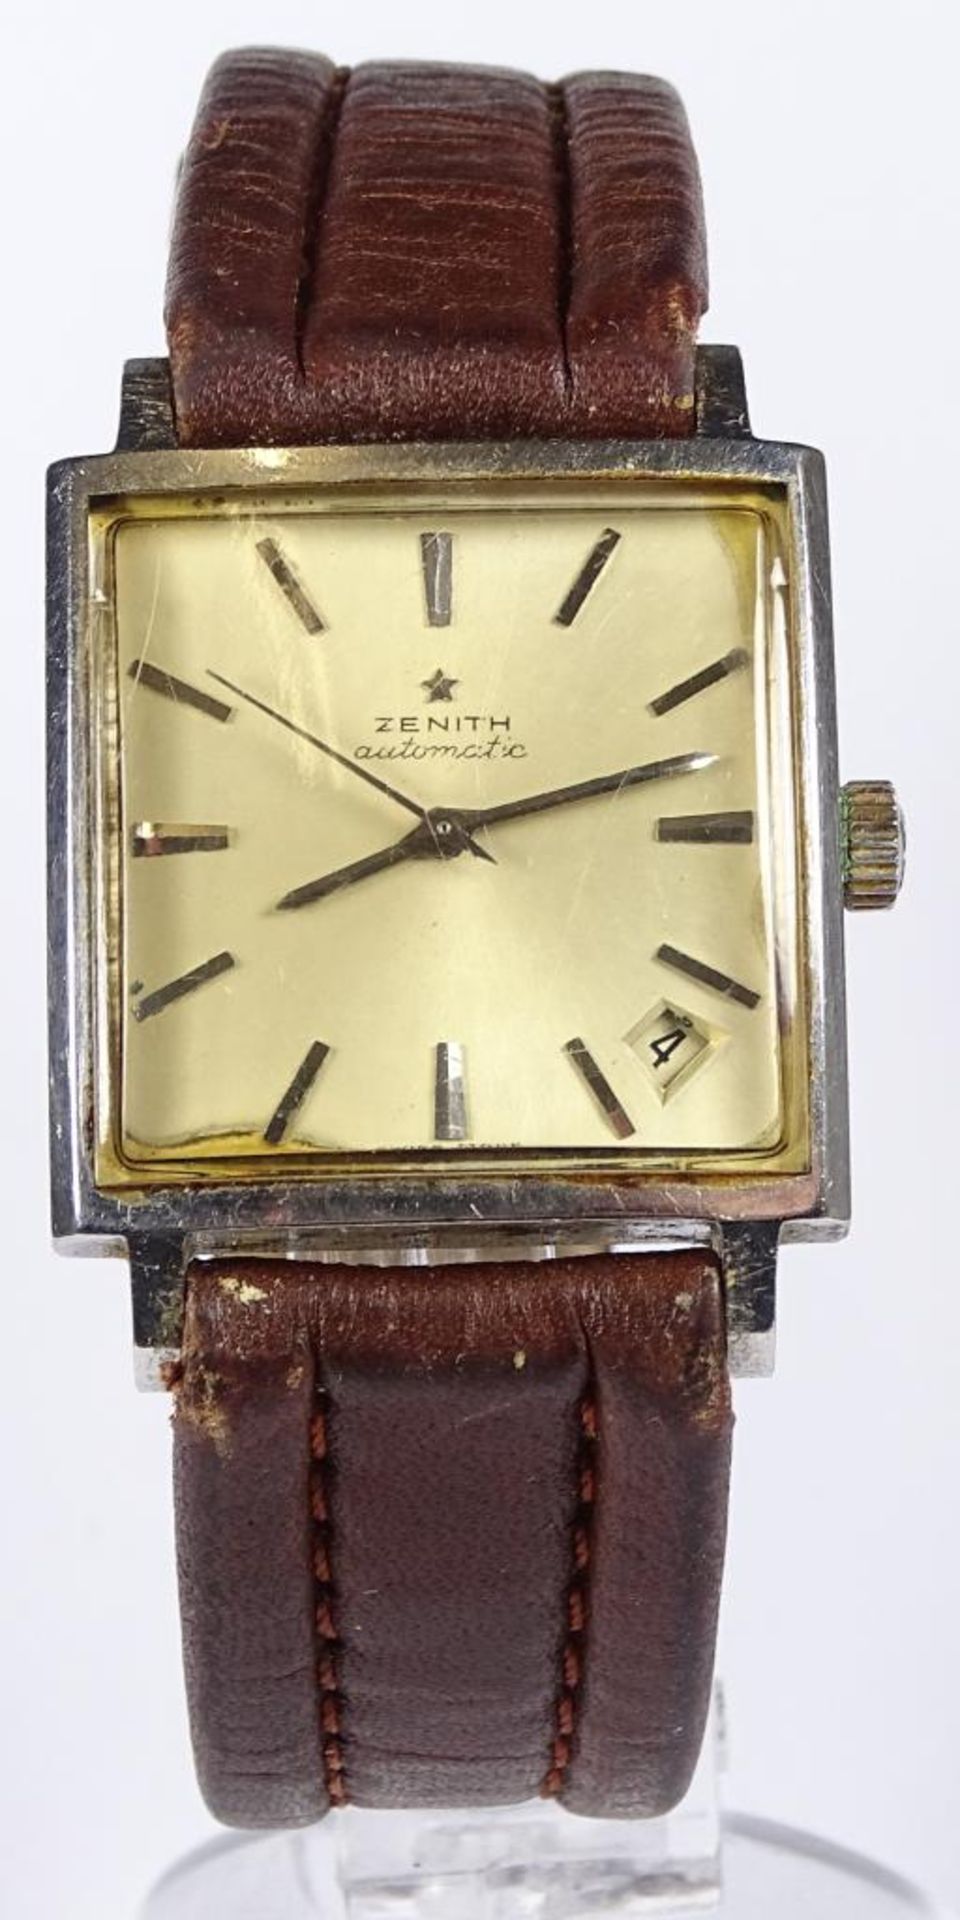 Herren Armbanduhr "Zenith",1960er Jahre,automatik Werk,dieses läuft,Datumsanzeige zwischen 4/5 Uhr,